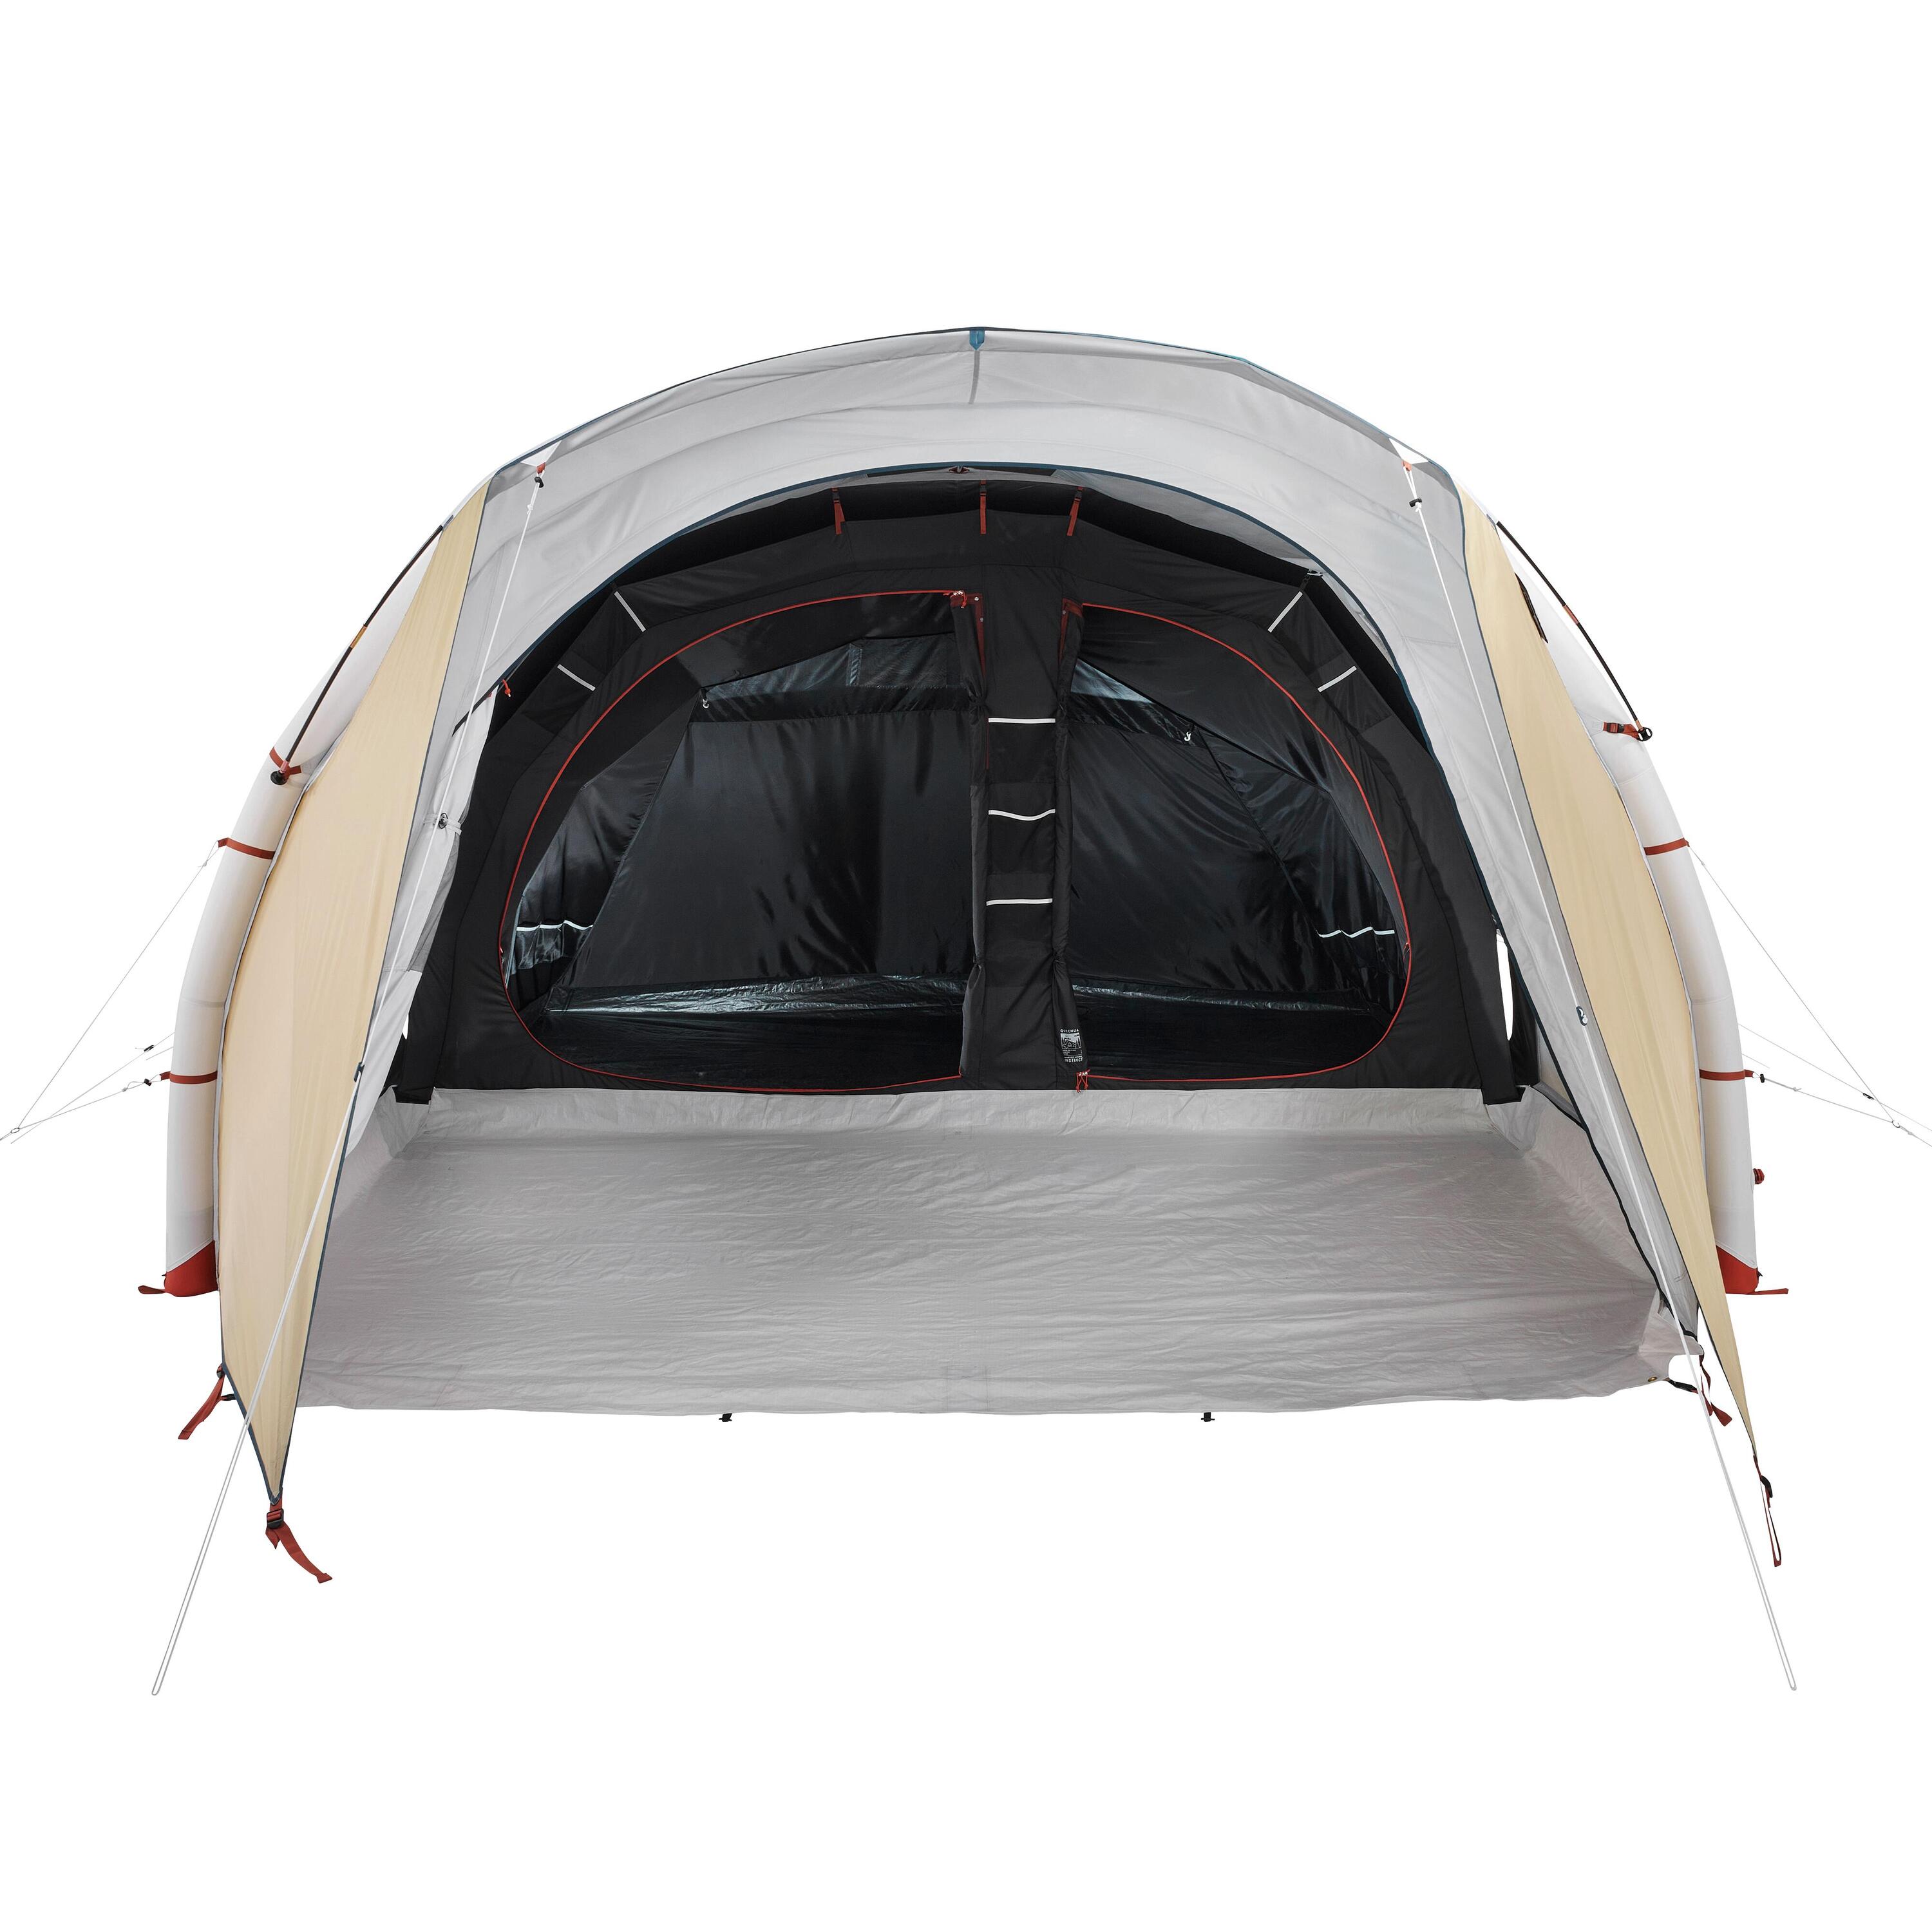 Запасная часть для палатки Quechua модели Air Seconds 5.2 Fresh & Black walbro wt 424 карбюратор для эхо gt 2400 srm 2400 pe 2400 ppt 2400 pp 1250 srs 2400 12300052133